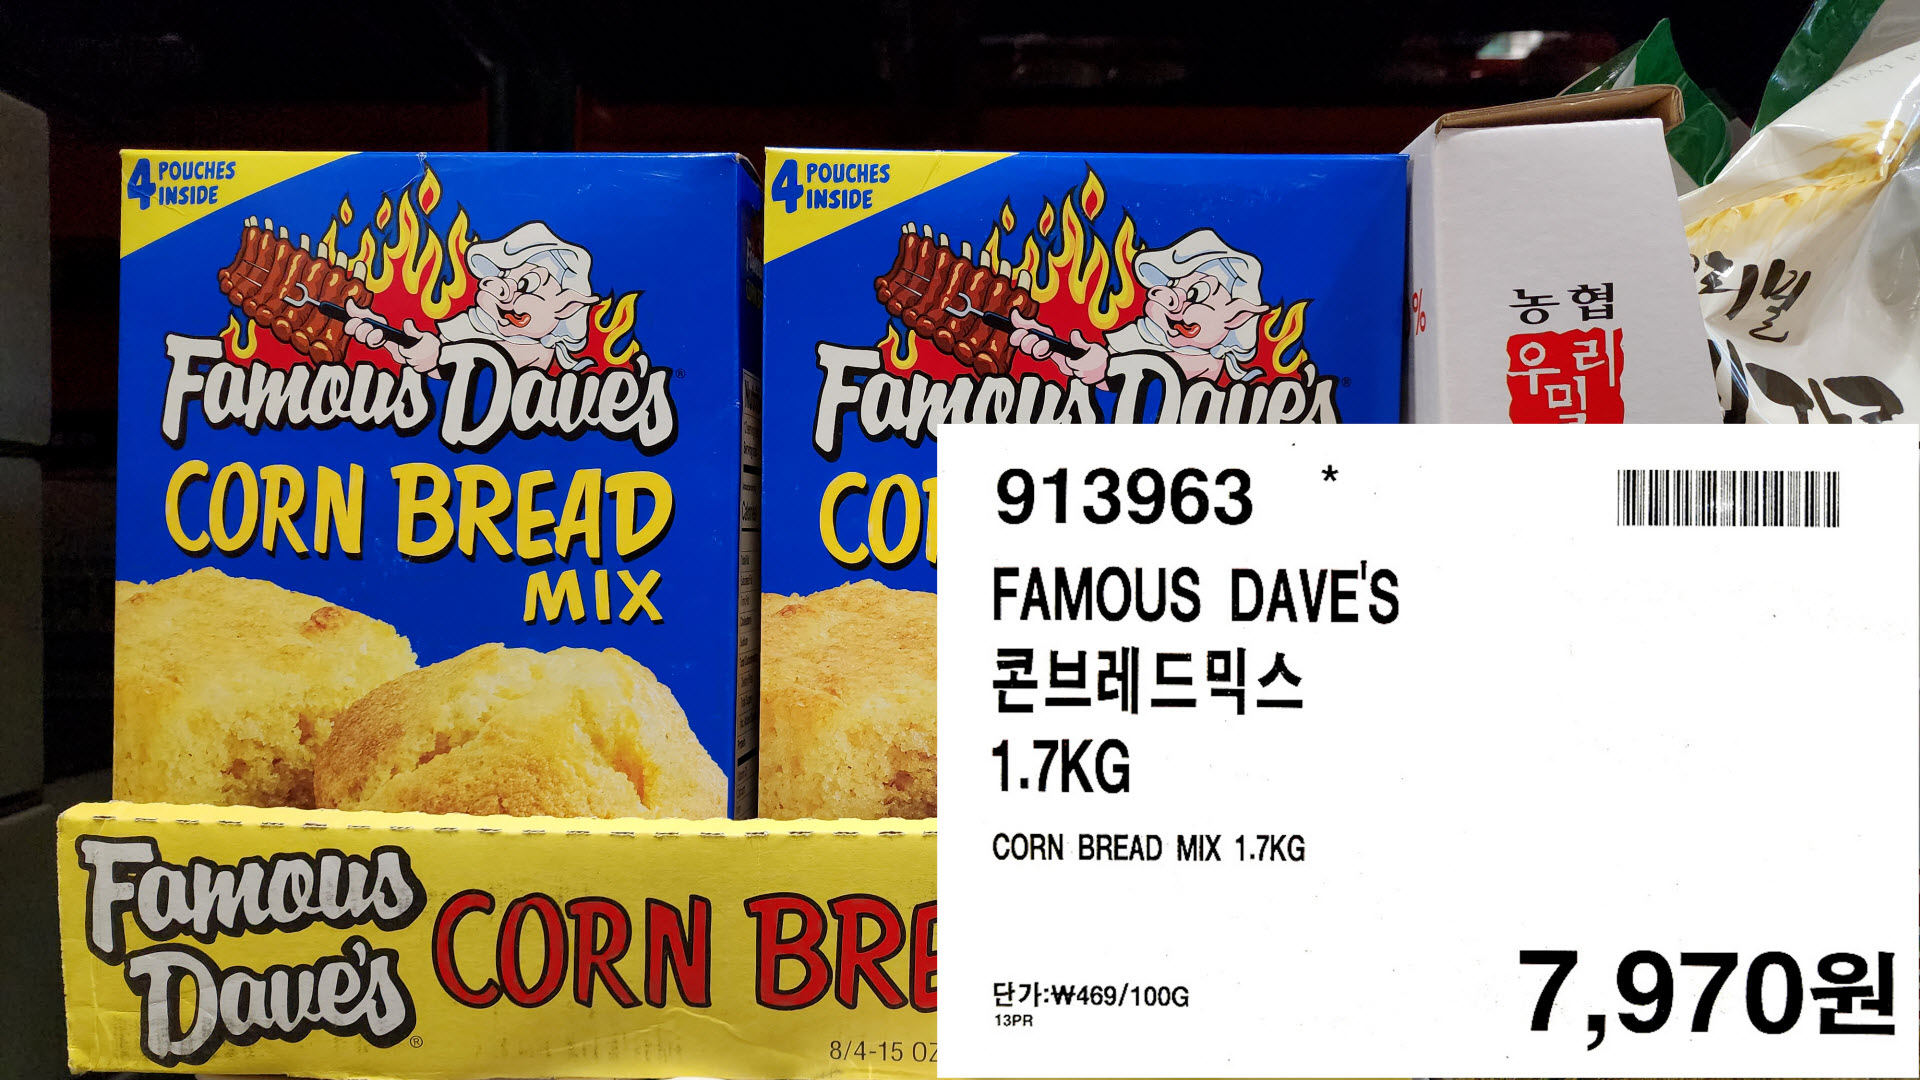 FAMOUS DAVE&#39;S
콘브레드믹스
1.7KG
CORN BREAD MIX 1.7KG
7&#44;970원